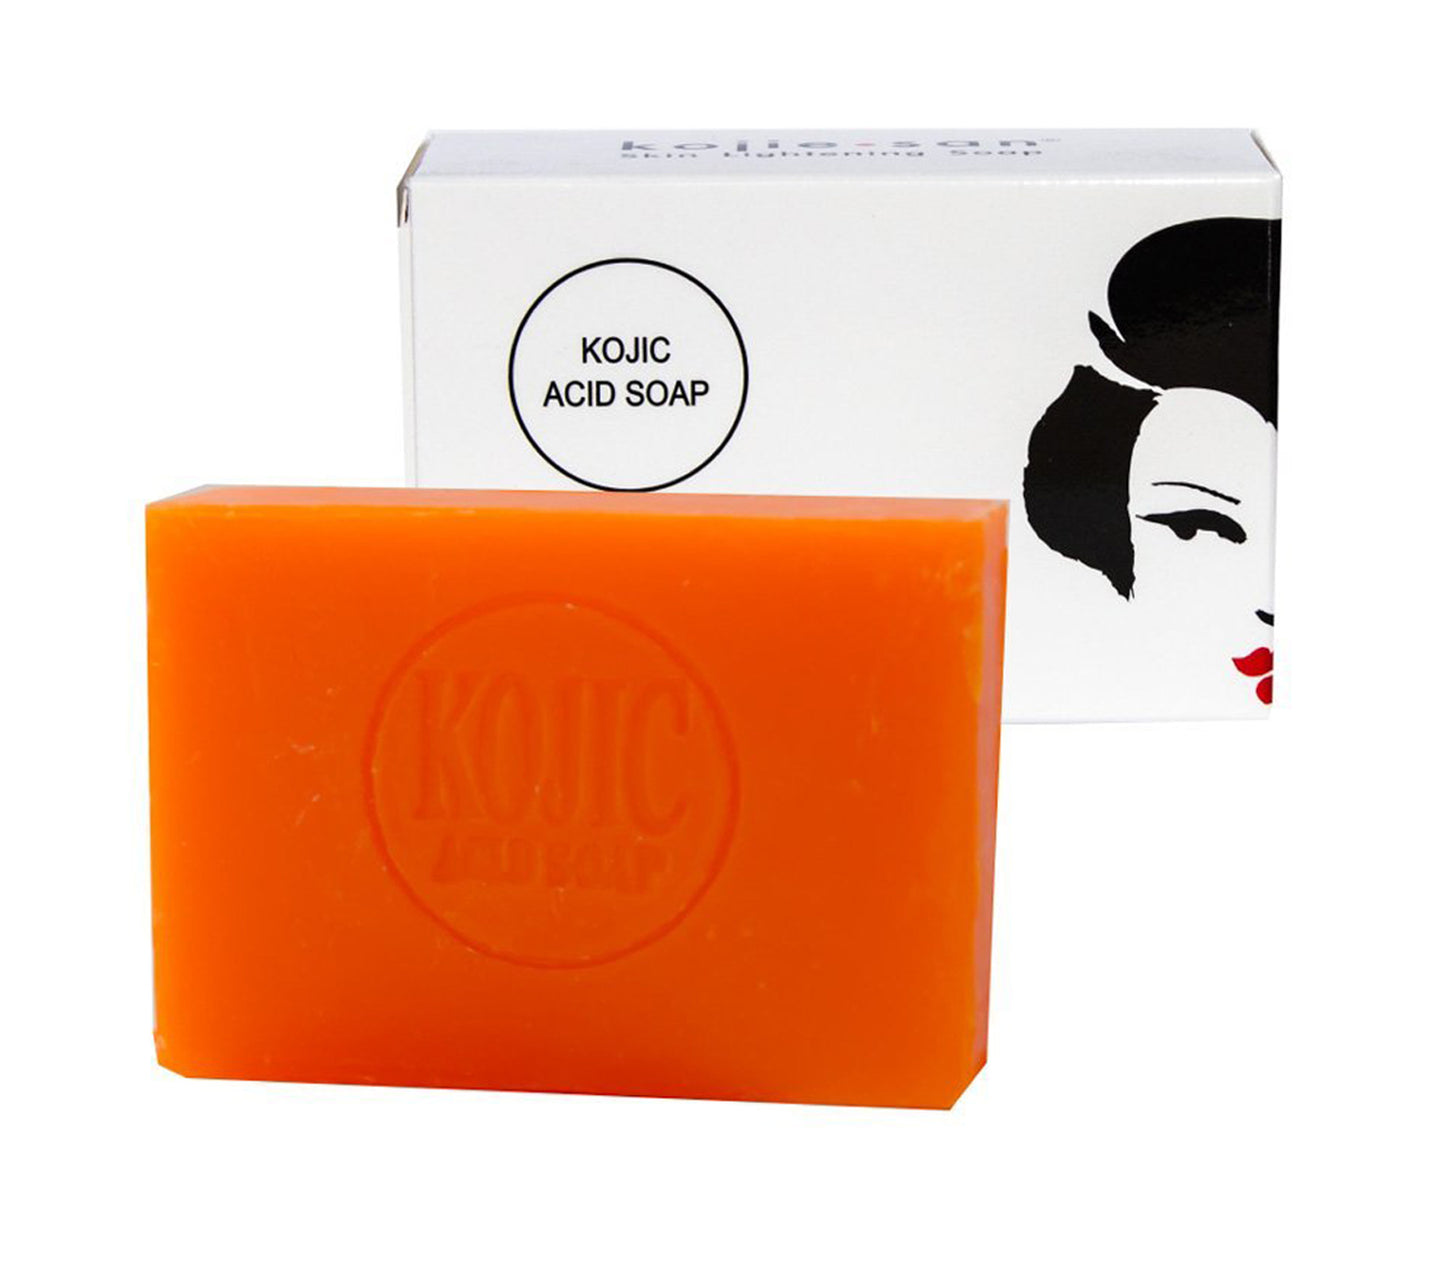 Kojie San Skin Lightening Soap 135gm Pack Of 2